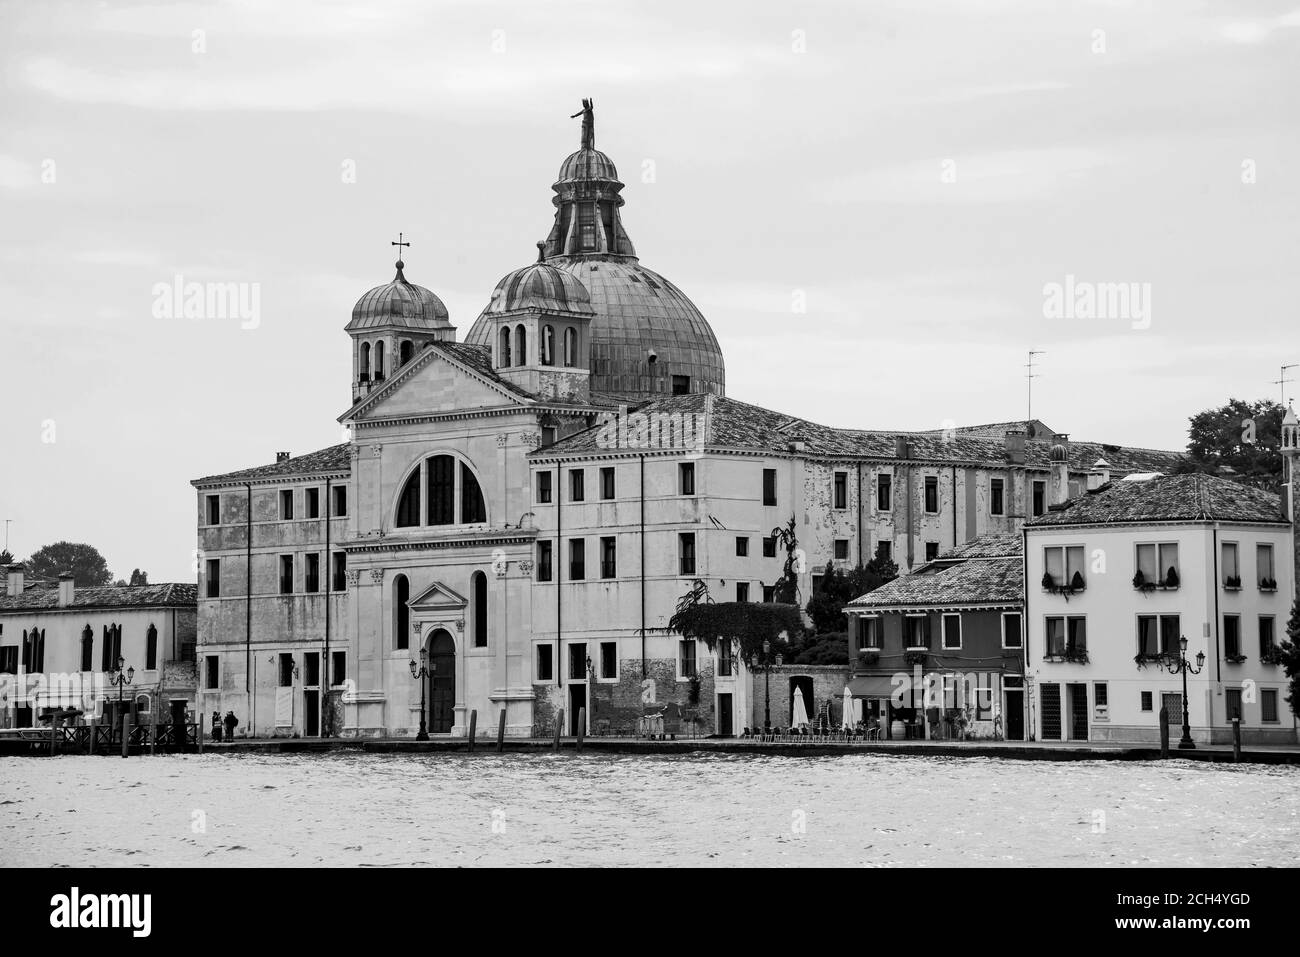 Venice; Italy; Europe Stock Photo